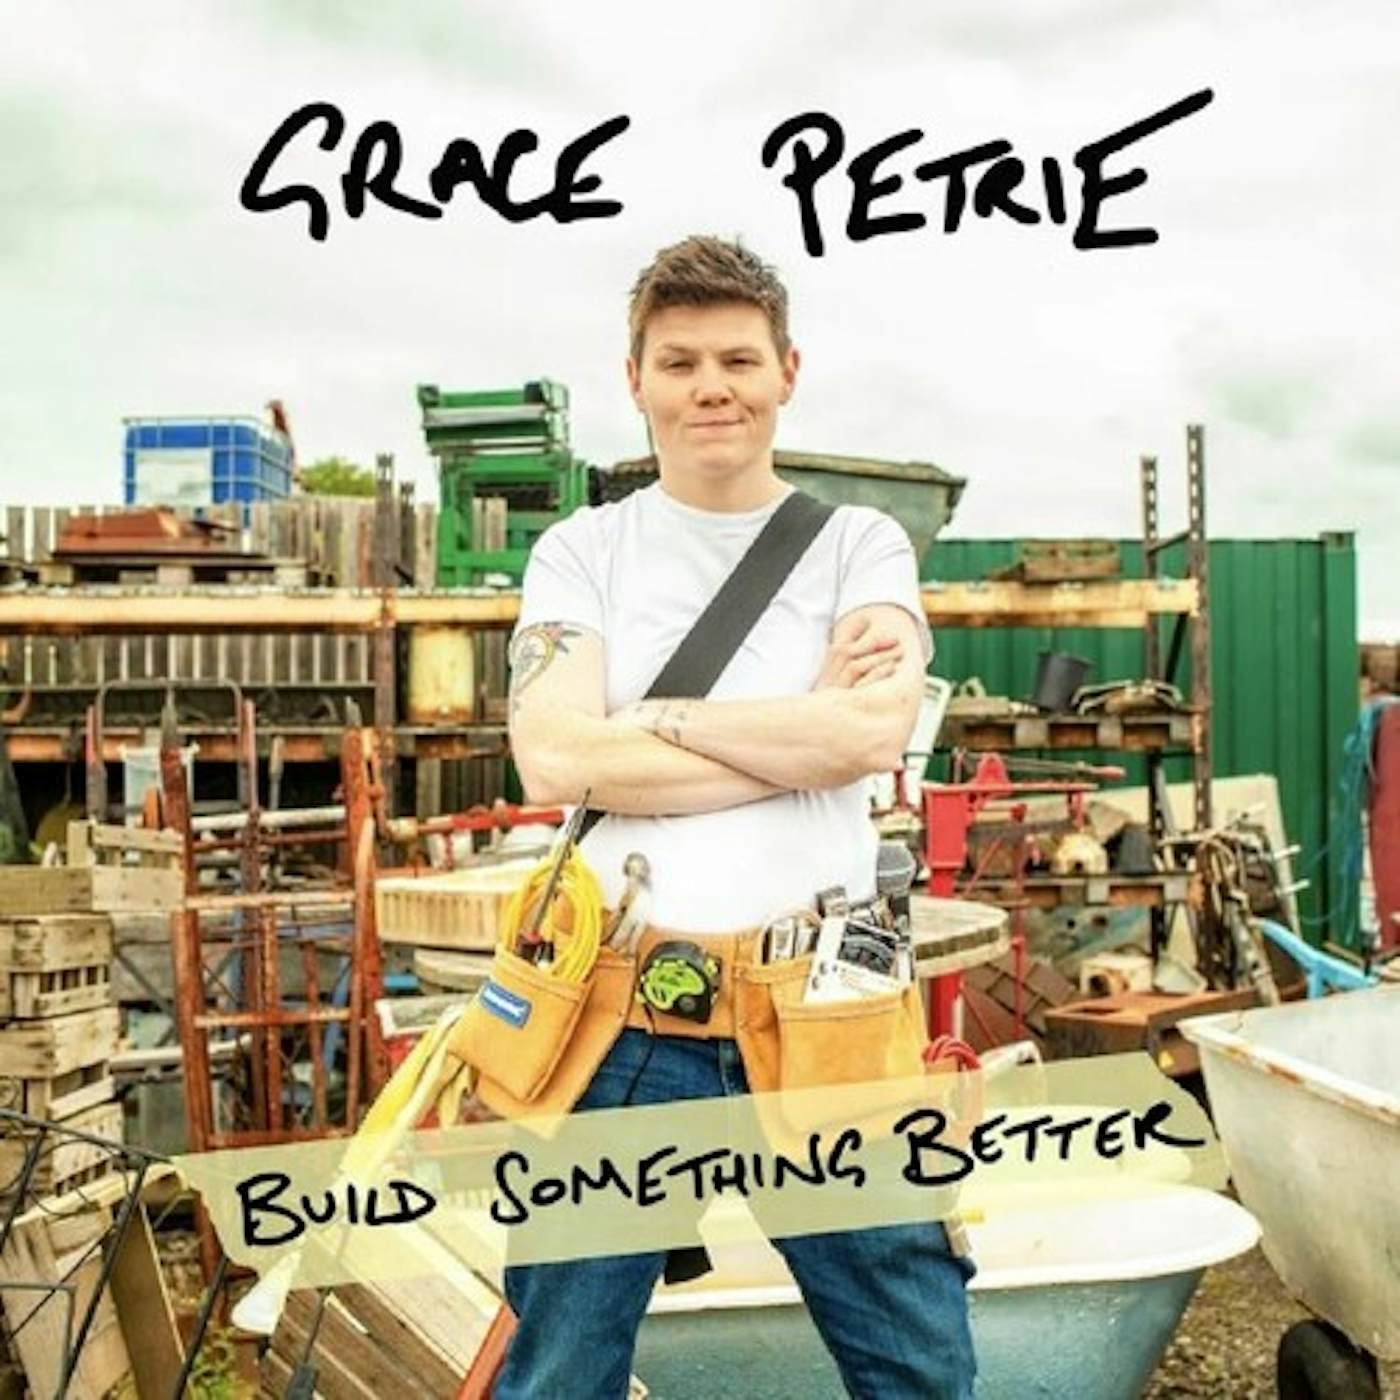 Grace Petrie BUILD SOMETHING BETTER CD